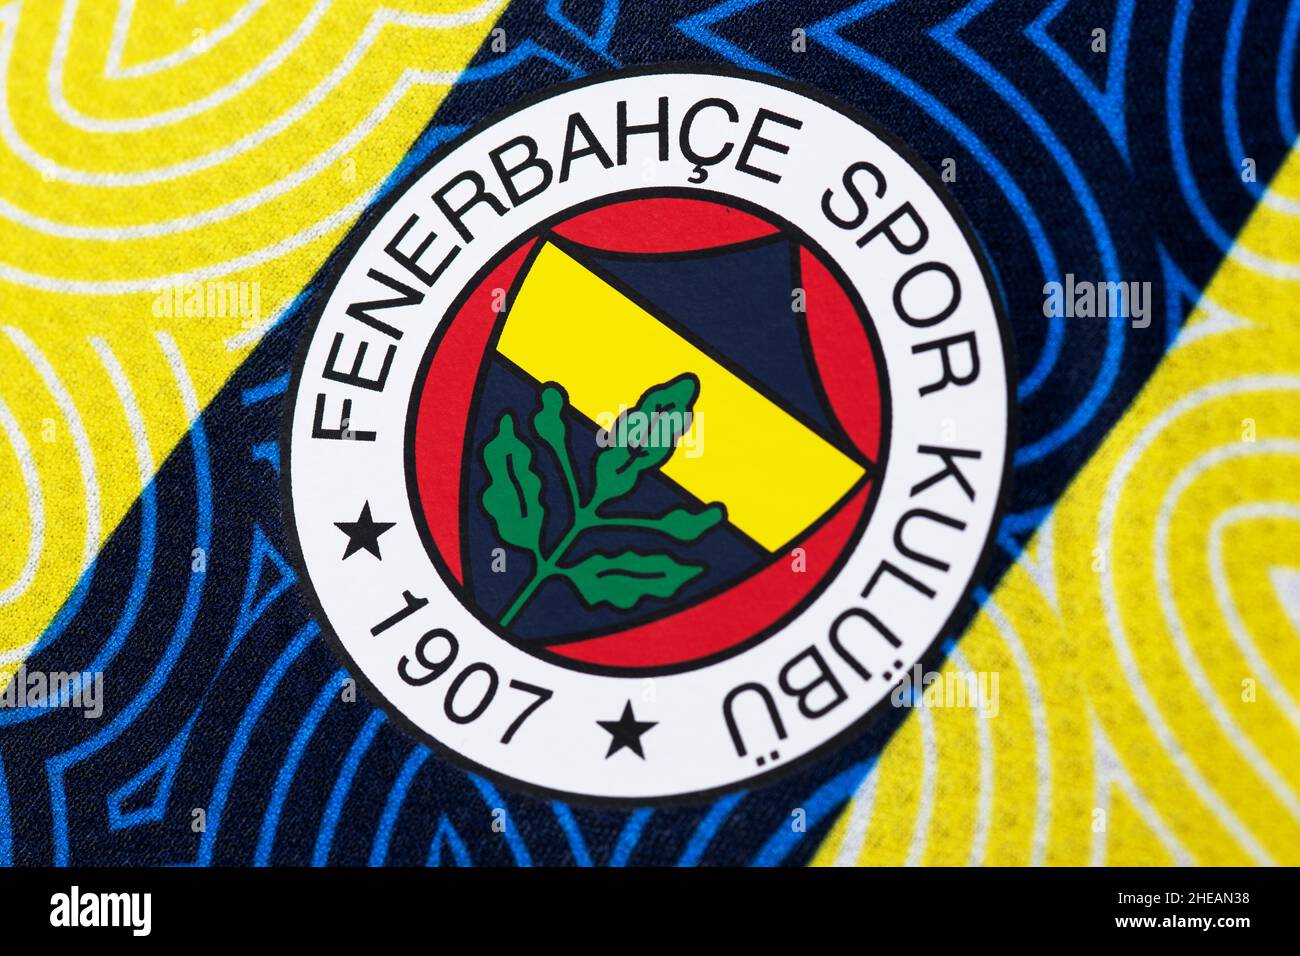 Nahaufnahme des Fenerbahçe S.K-Kits Stockfoto